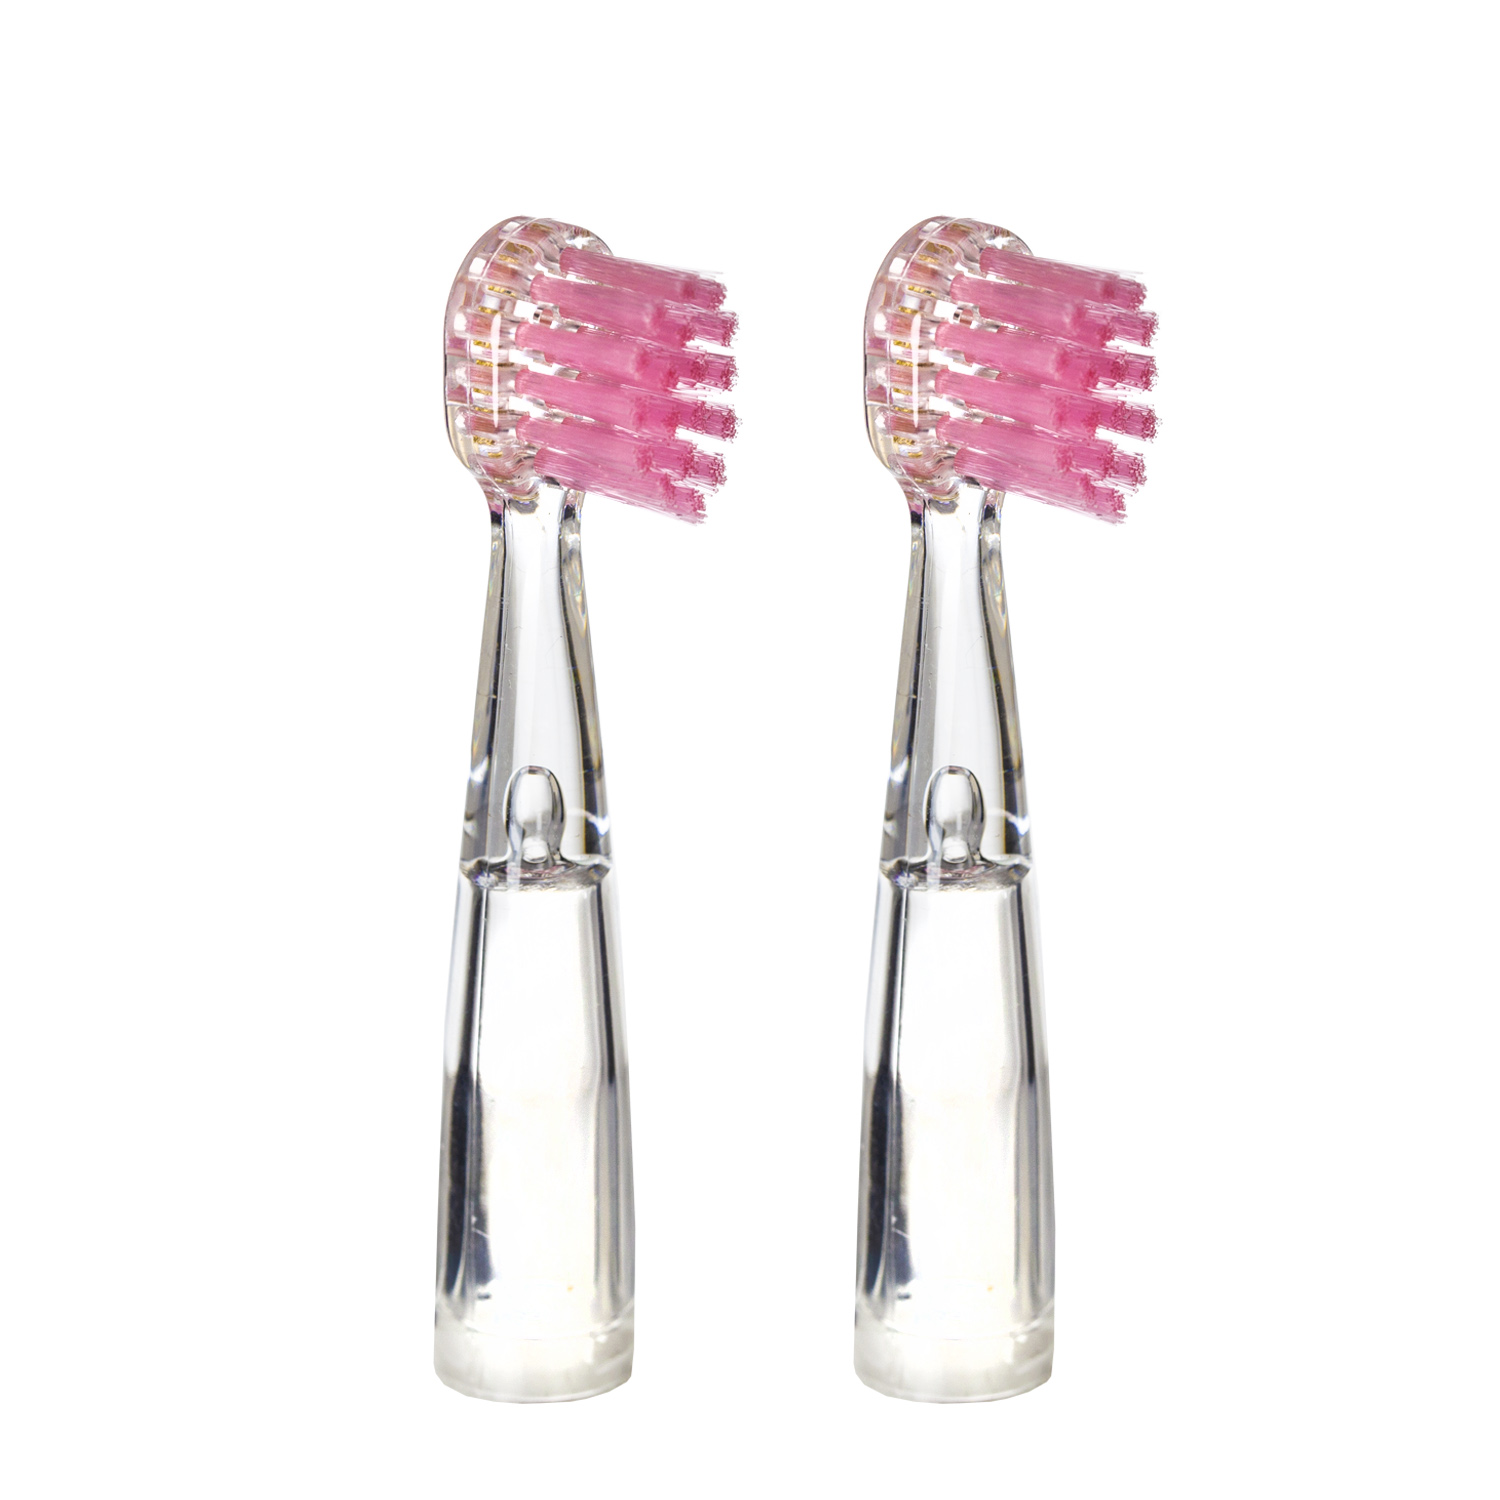 Насадка для детской электрической зубной щетки Revyline RL 025, розовая, 2 шт., 6171 насадки luazon lp 004 для электрической зубной щетки oral b 4 шт в наборе